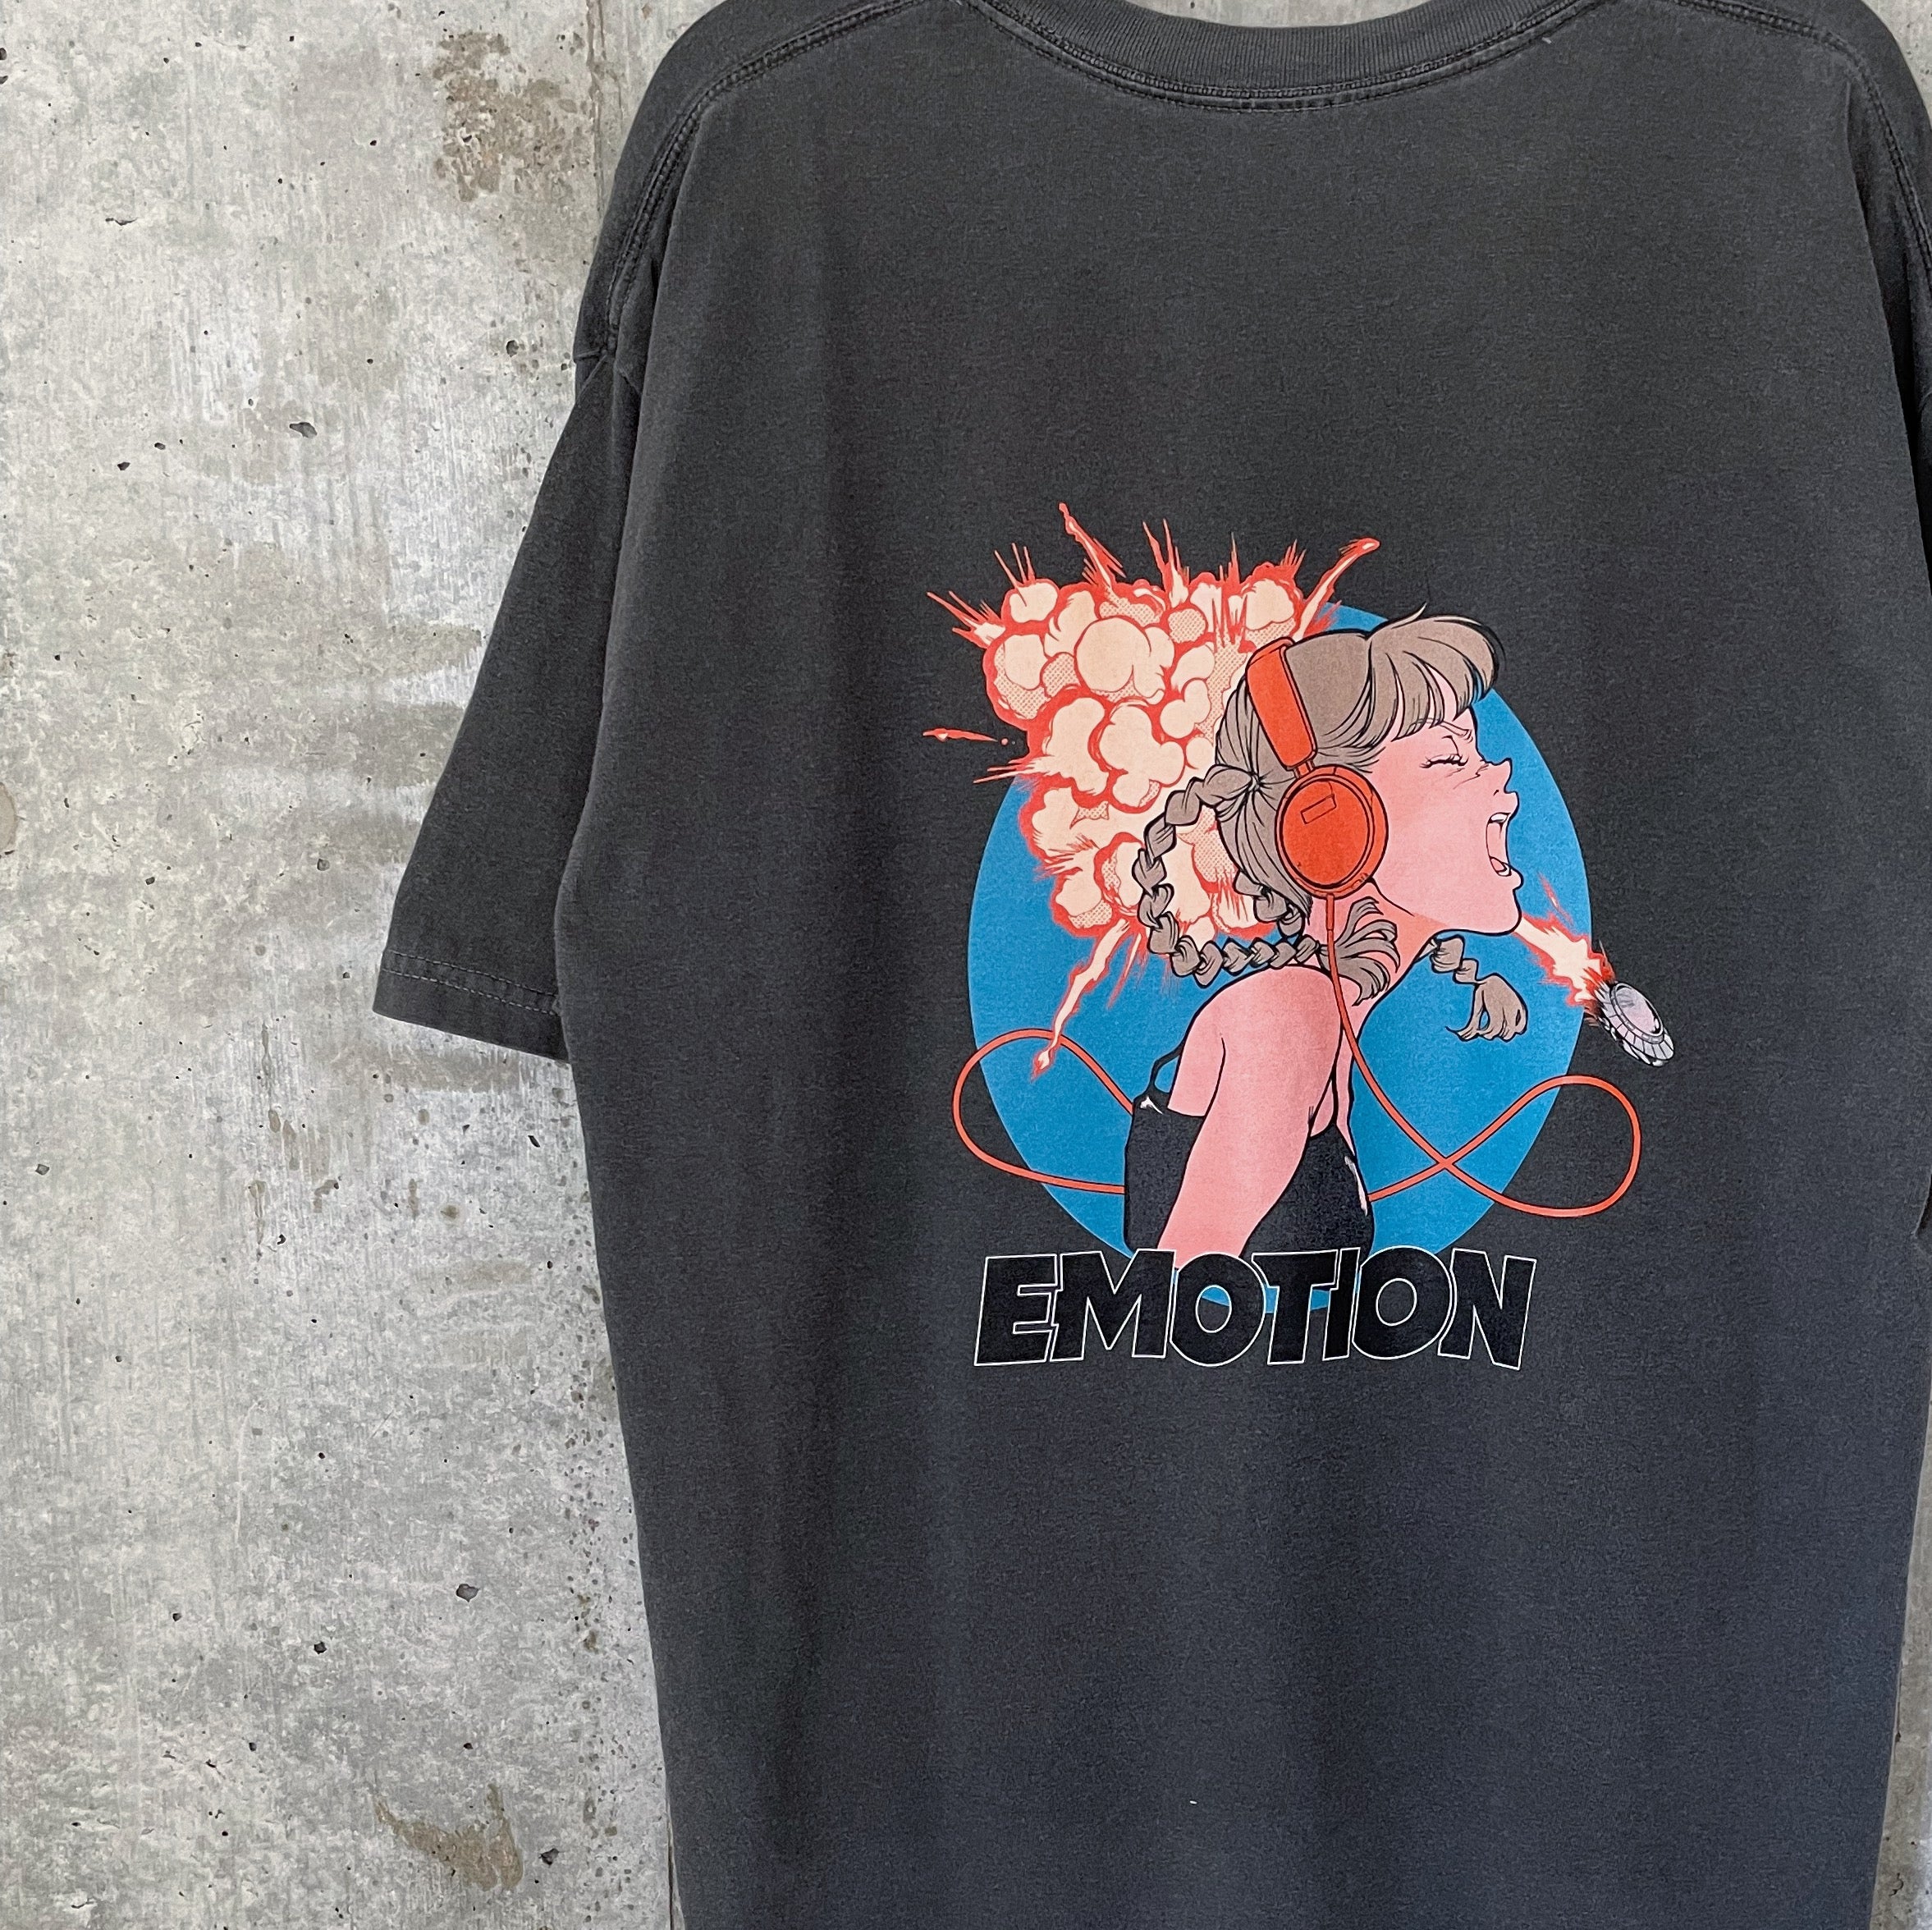 maniko EMOTION Tshirt